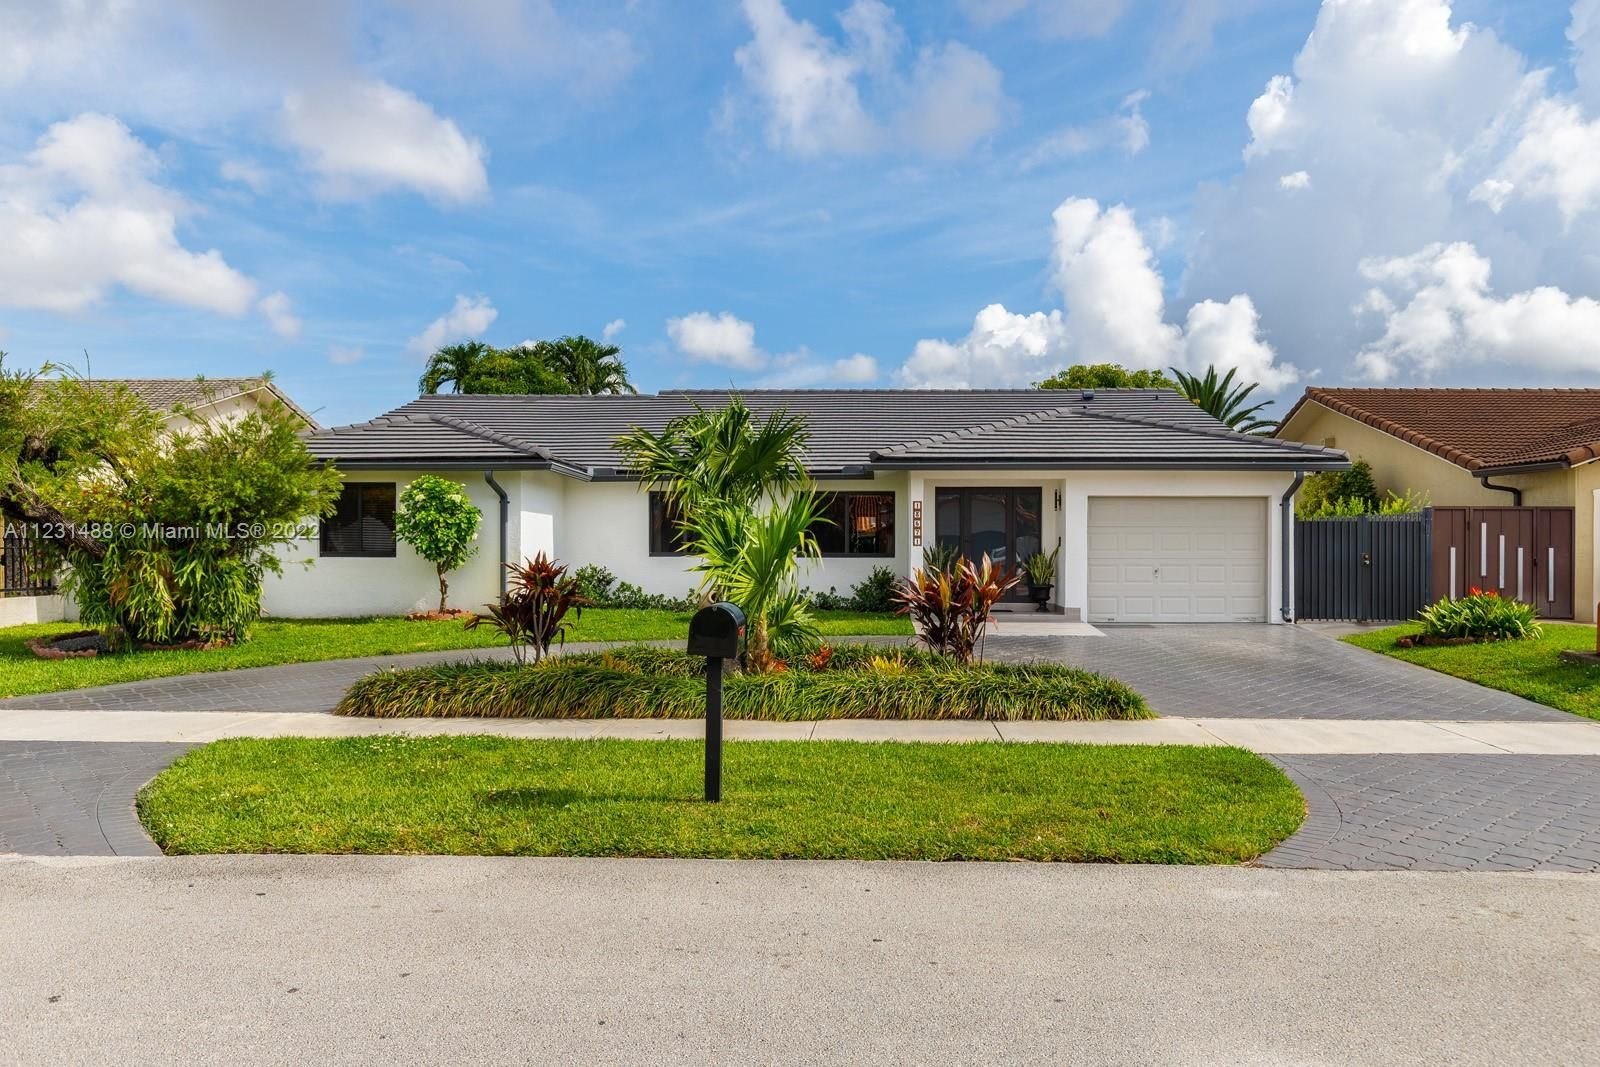 Real estate property located at 13571 40th Ln, Miami-Dade County, Miami, FL